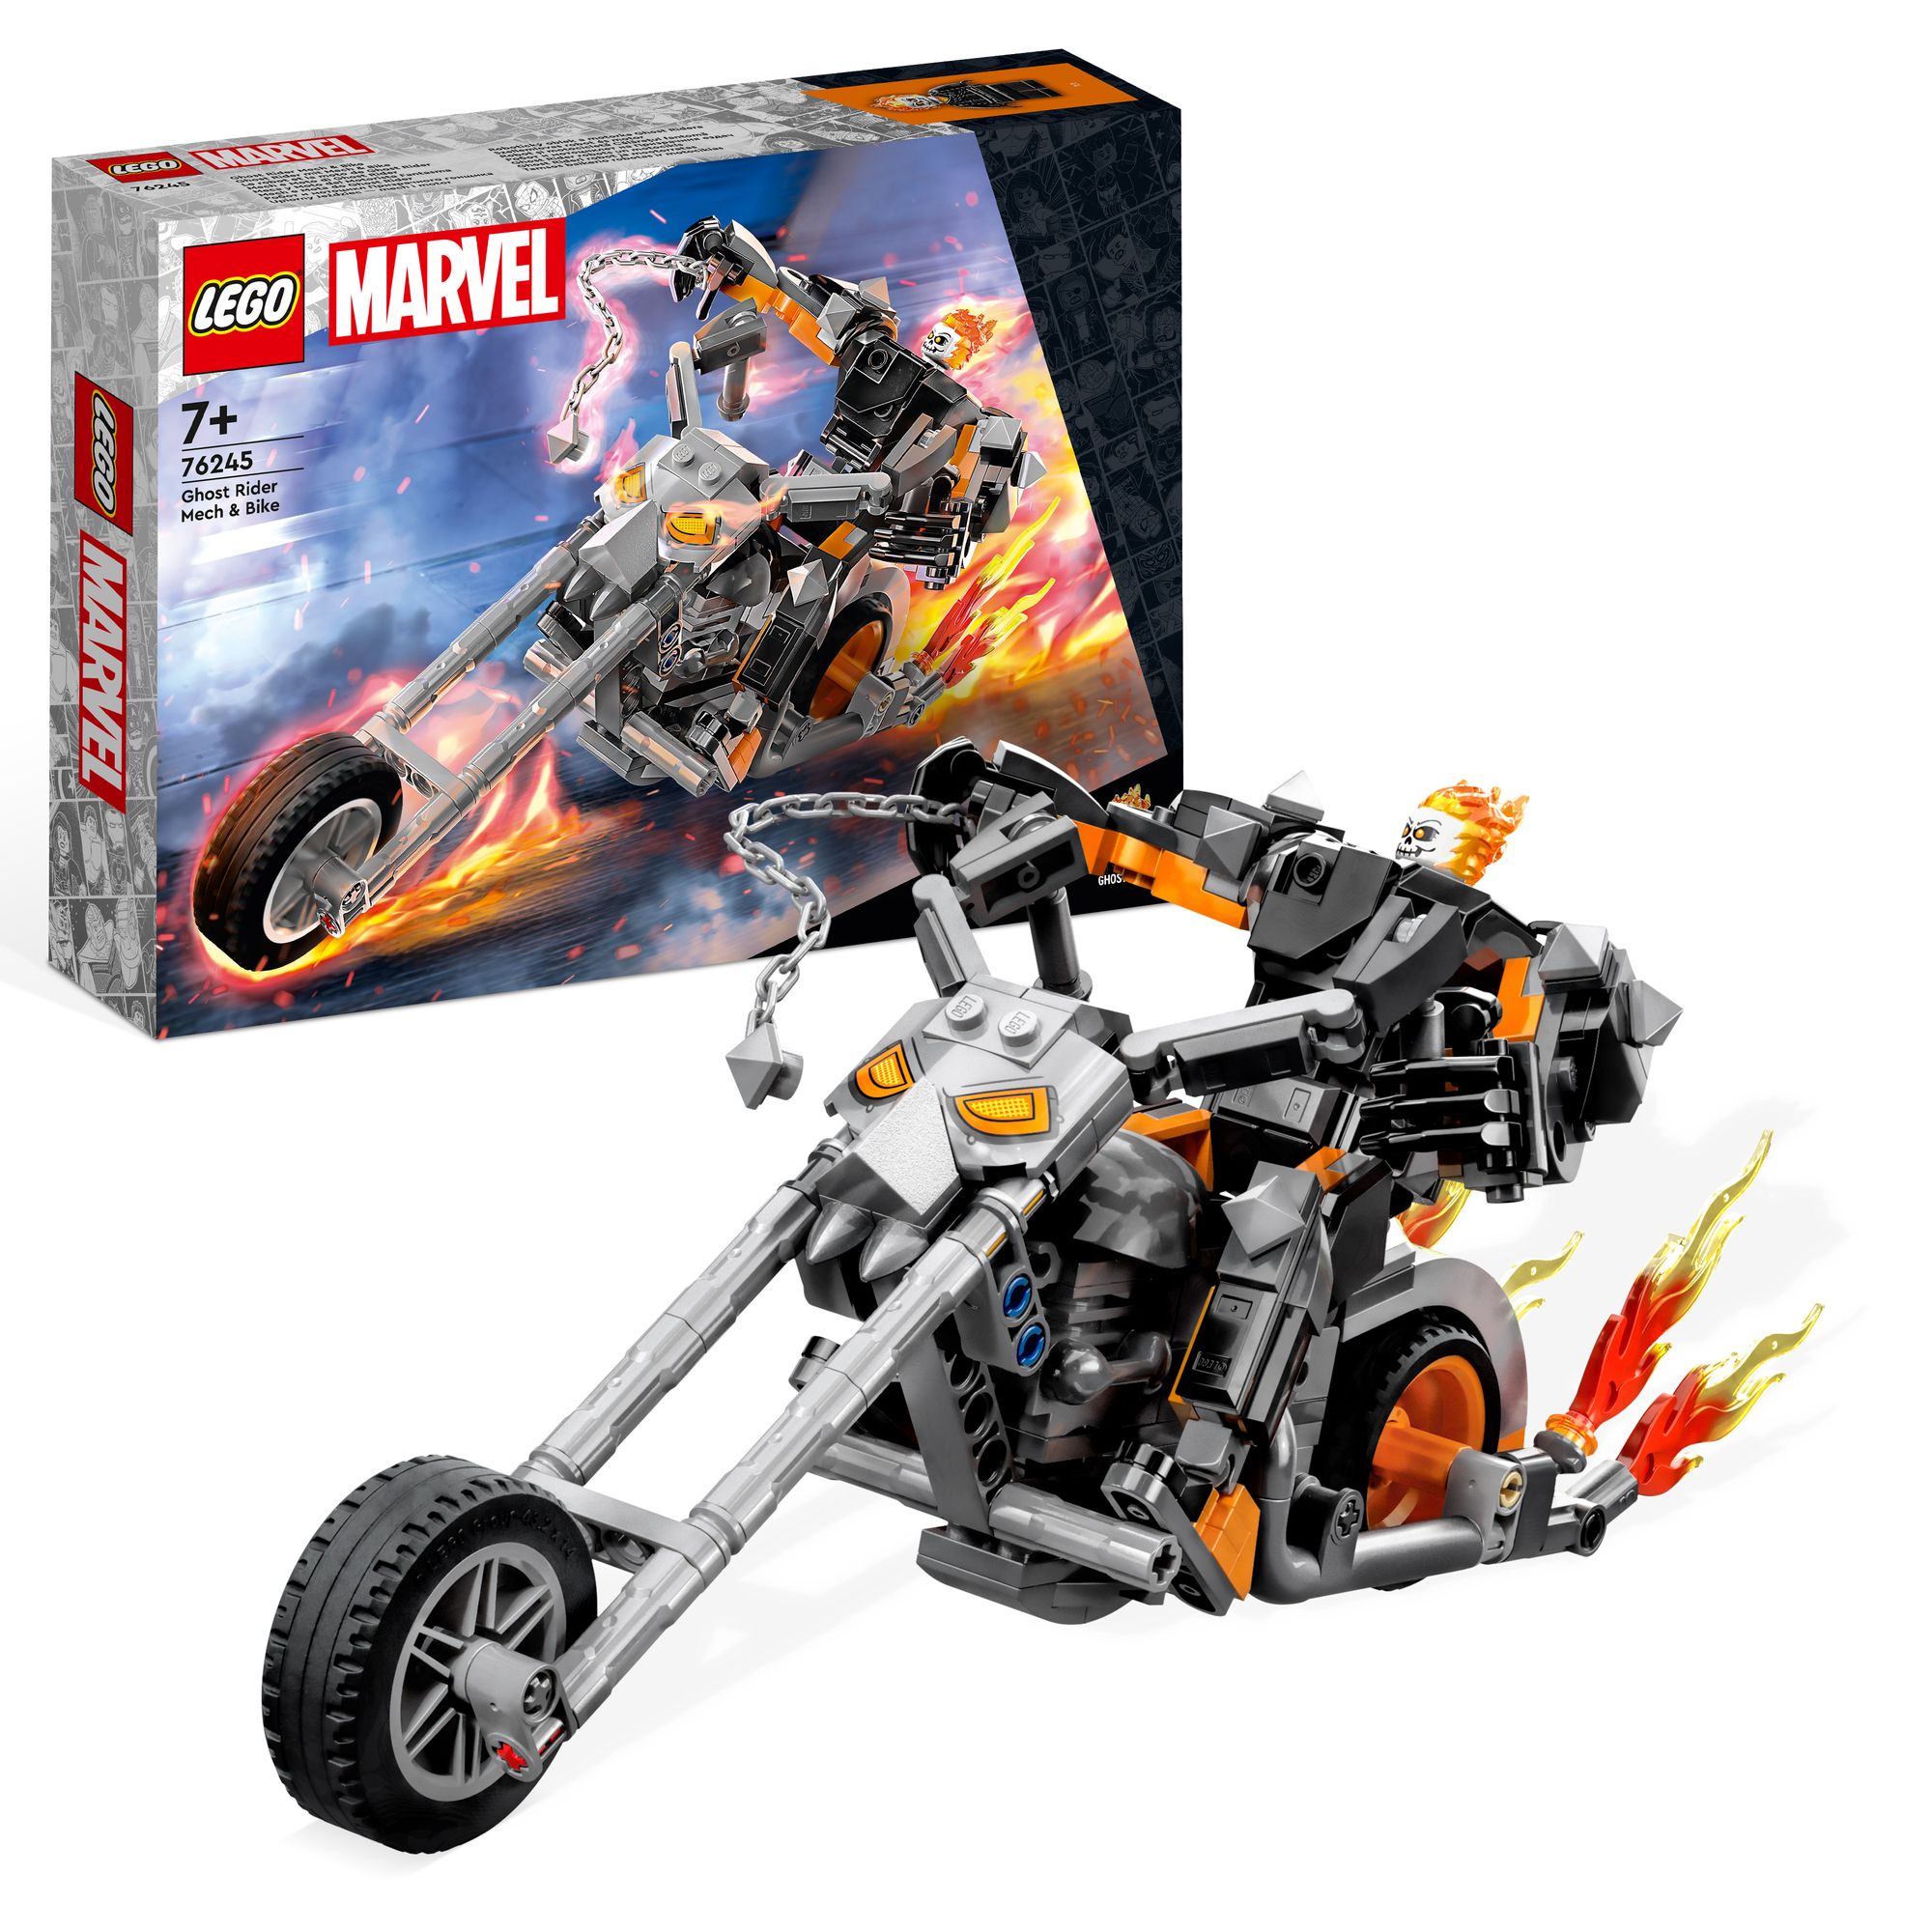 LEGO Marvel 76245 Ghost Rider mit Mech & Bike, Superhelden Set' kaufen -  Spielwaren